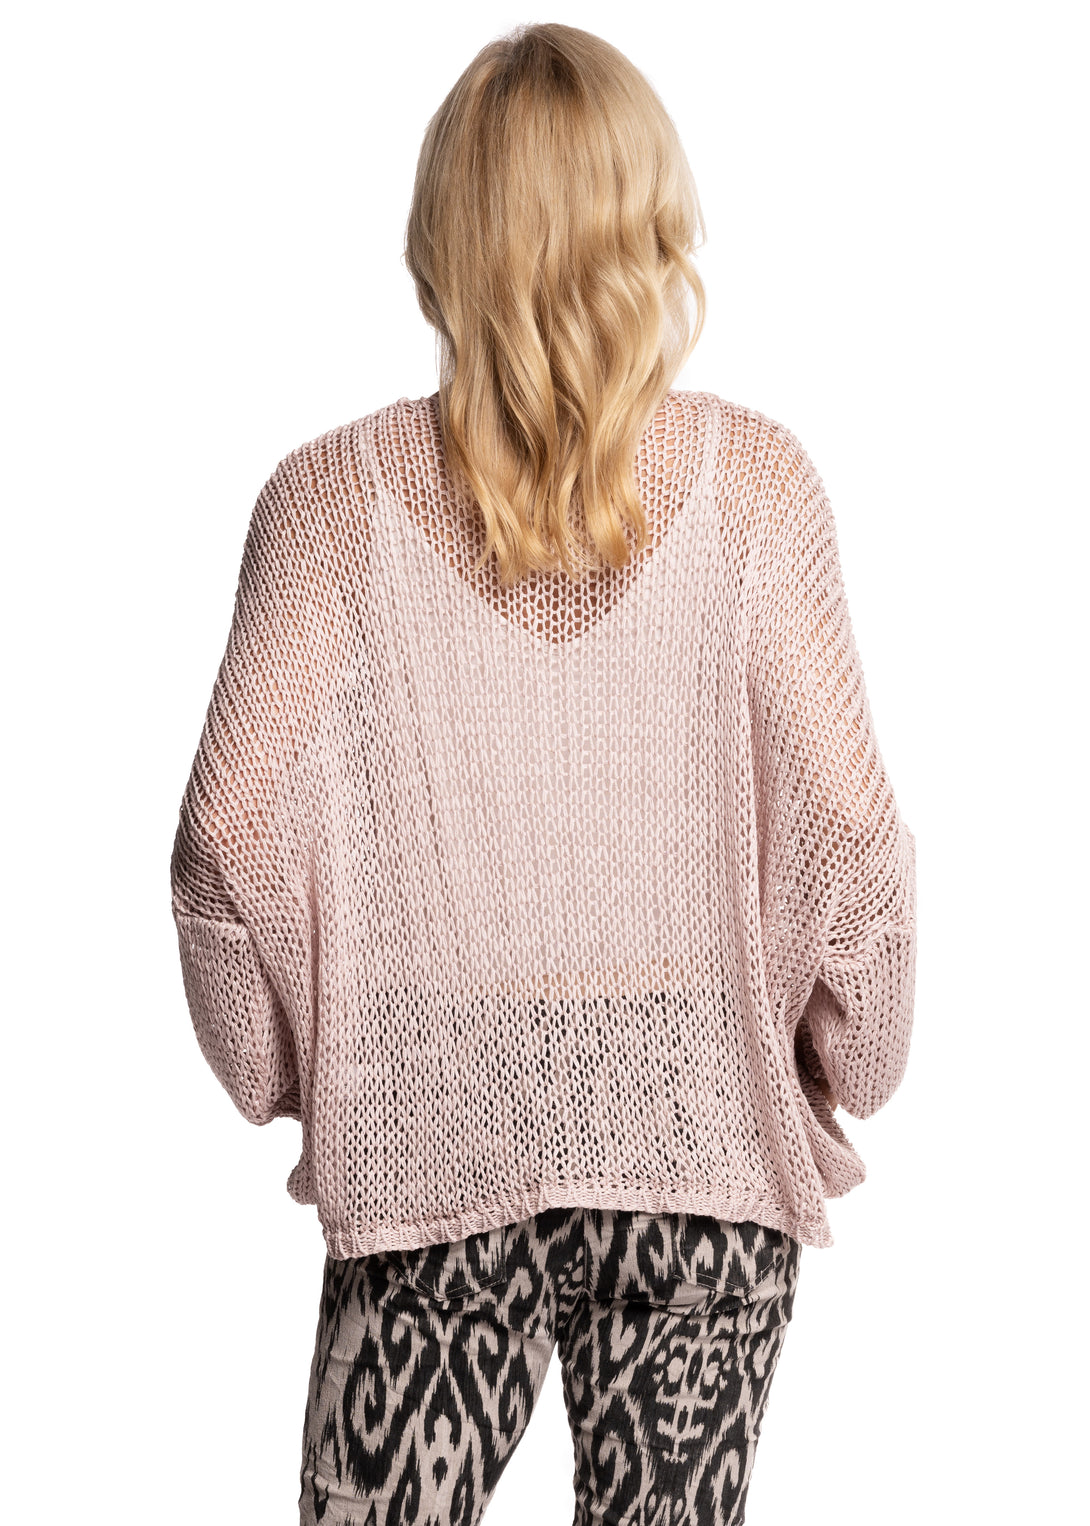 Rossella Knit Top in Blush - Imagine Fashion